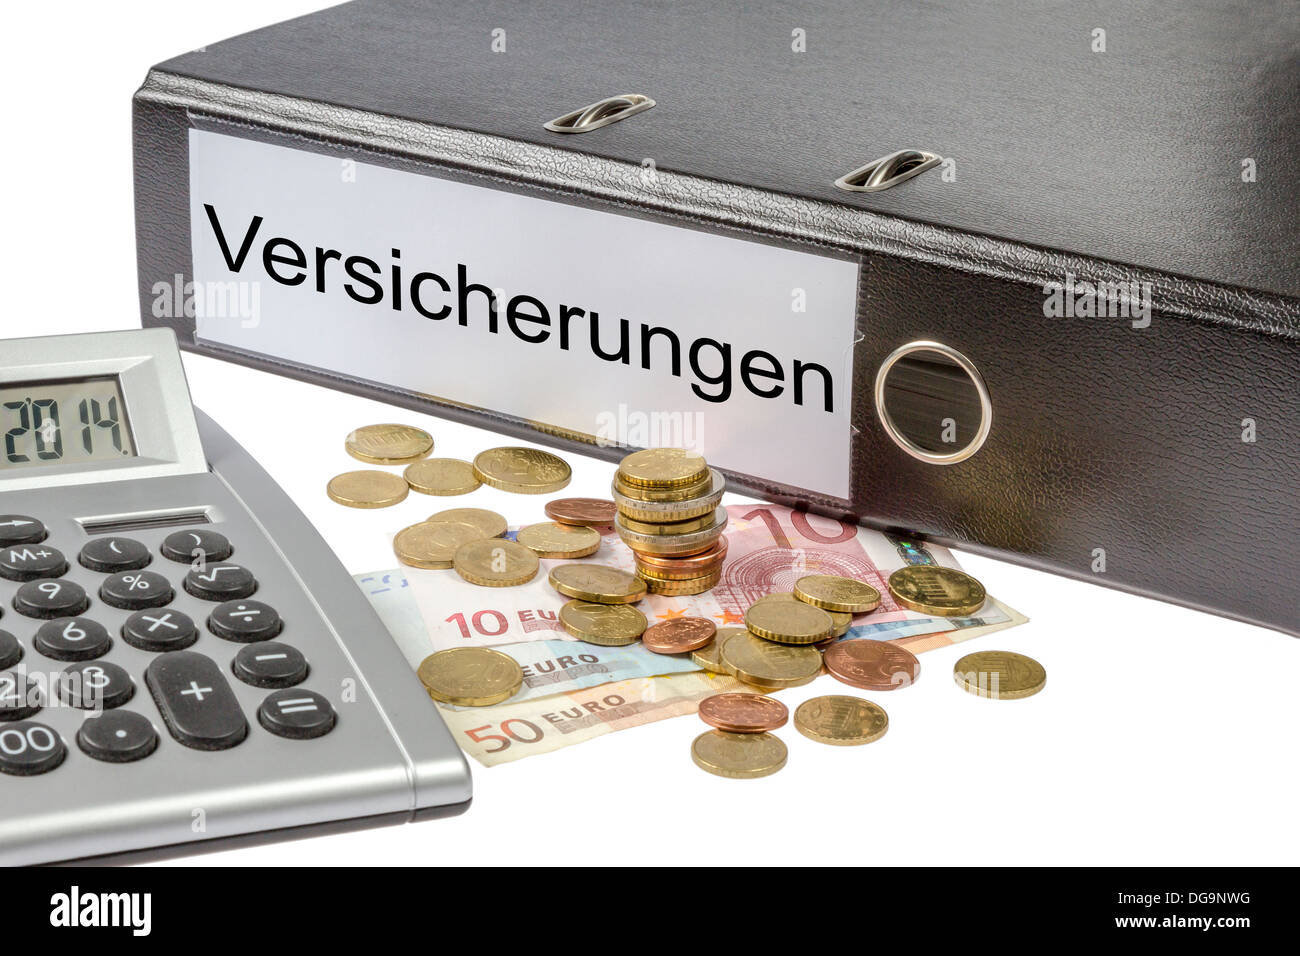 Un legante etichettato wit la parola Versicherungen (tedesco di assicurazione), calcolatrice e moneta europea isolati su sfondo bianco Foto Stock